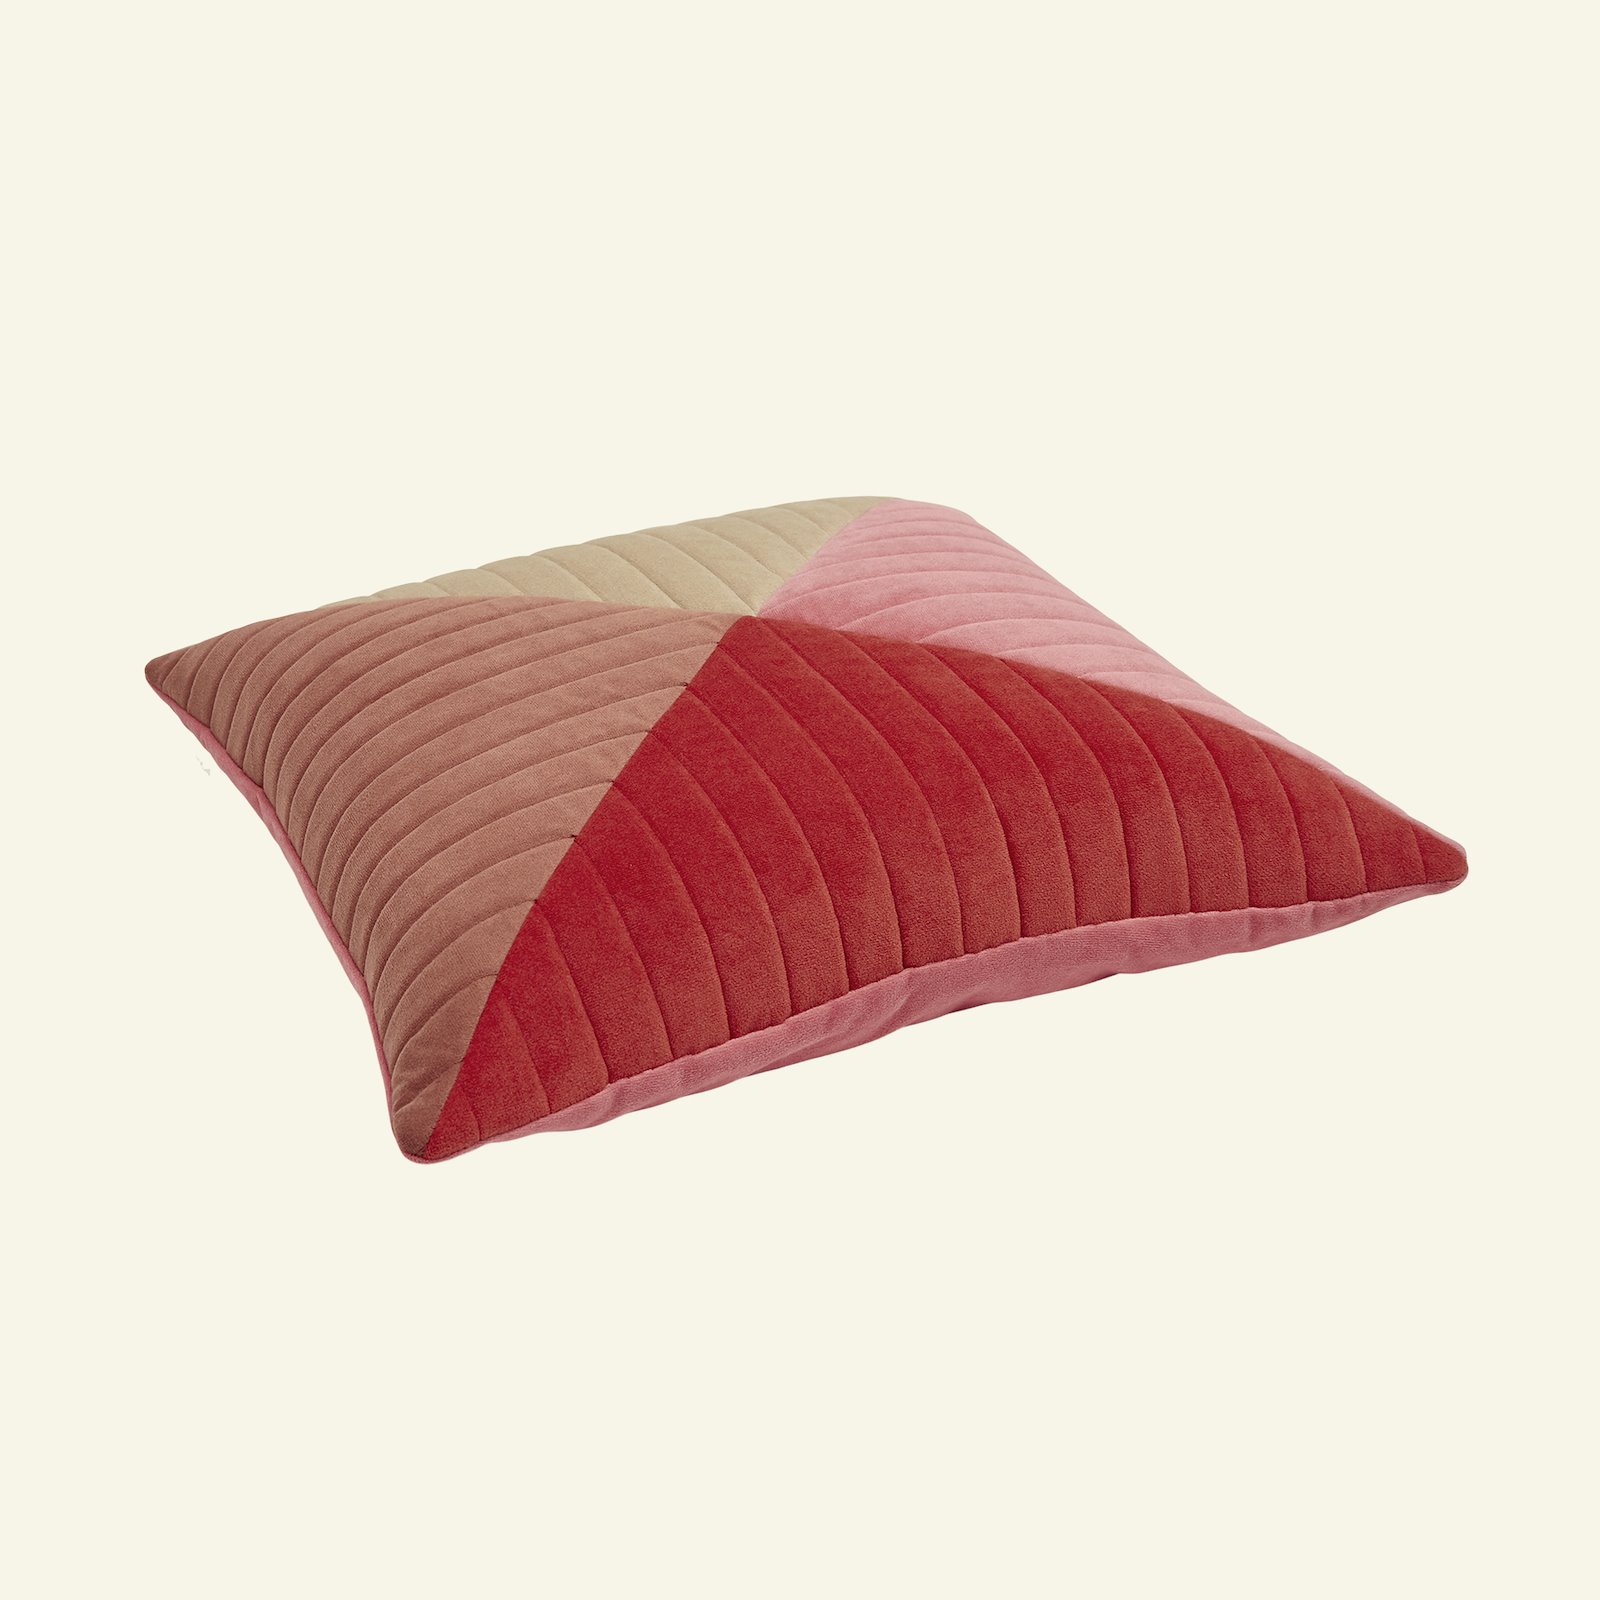 Upholstery velvet dark dusty pink 824158_823644_826257_826258_sskit